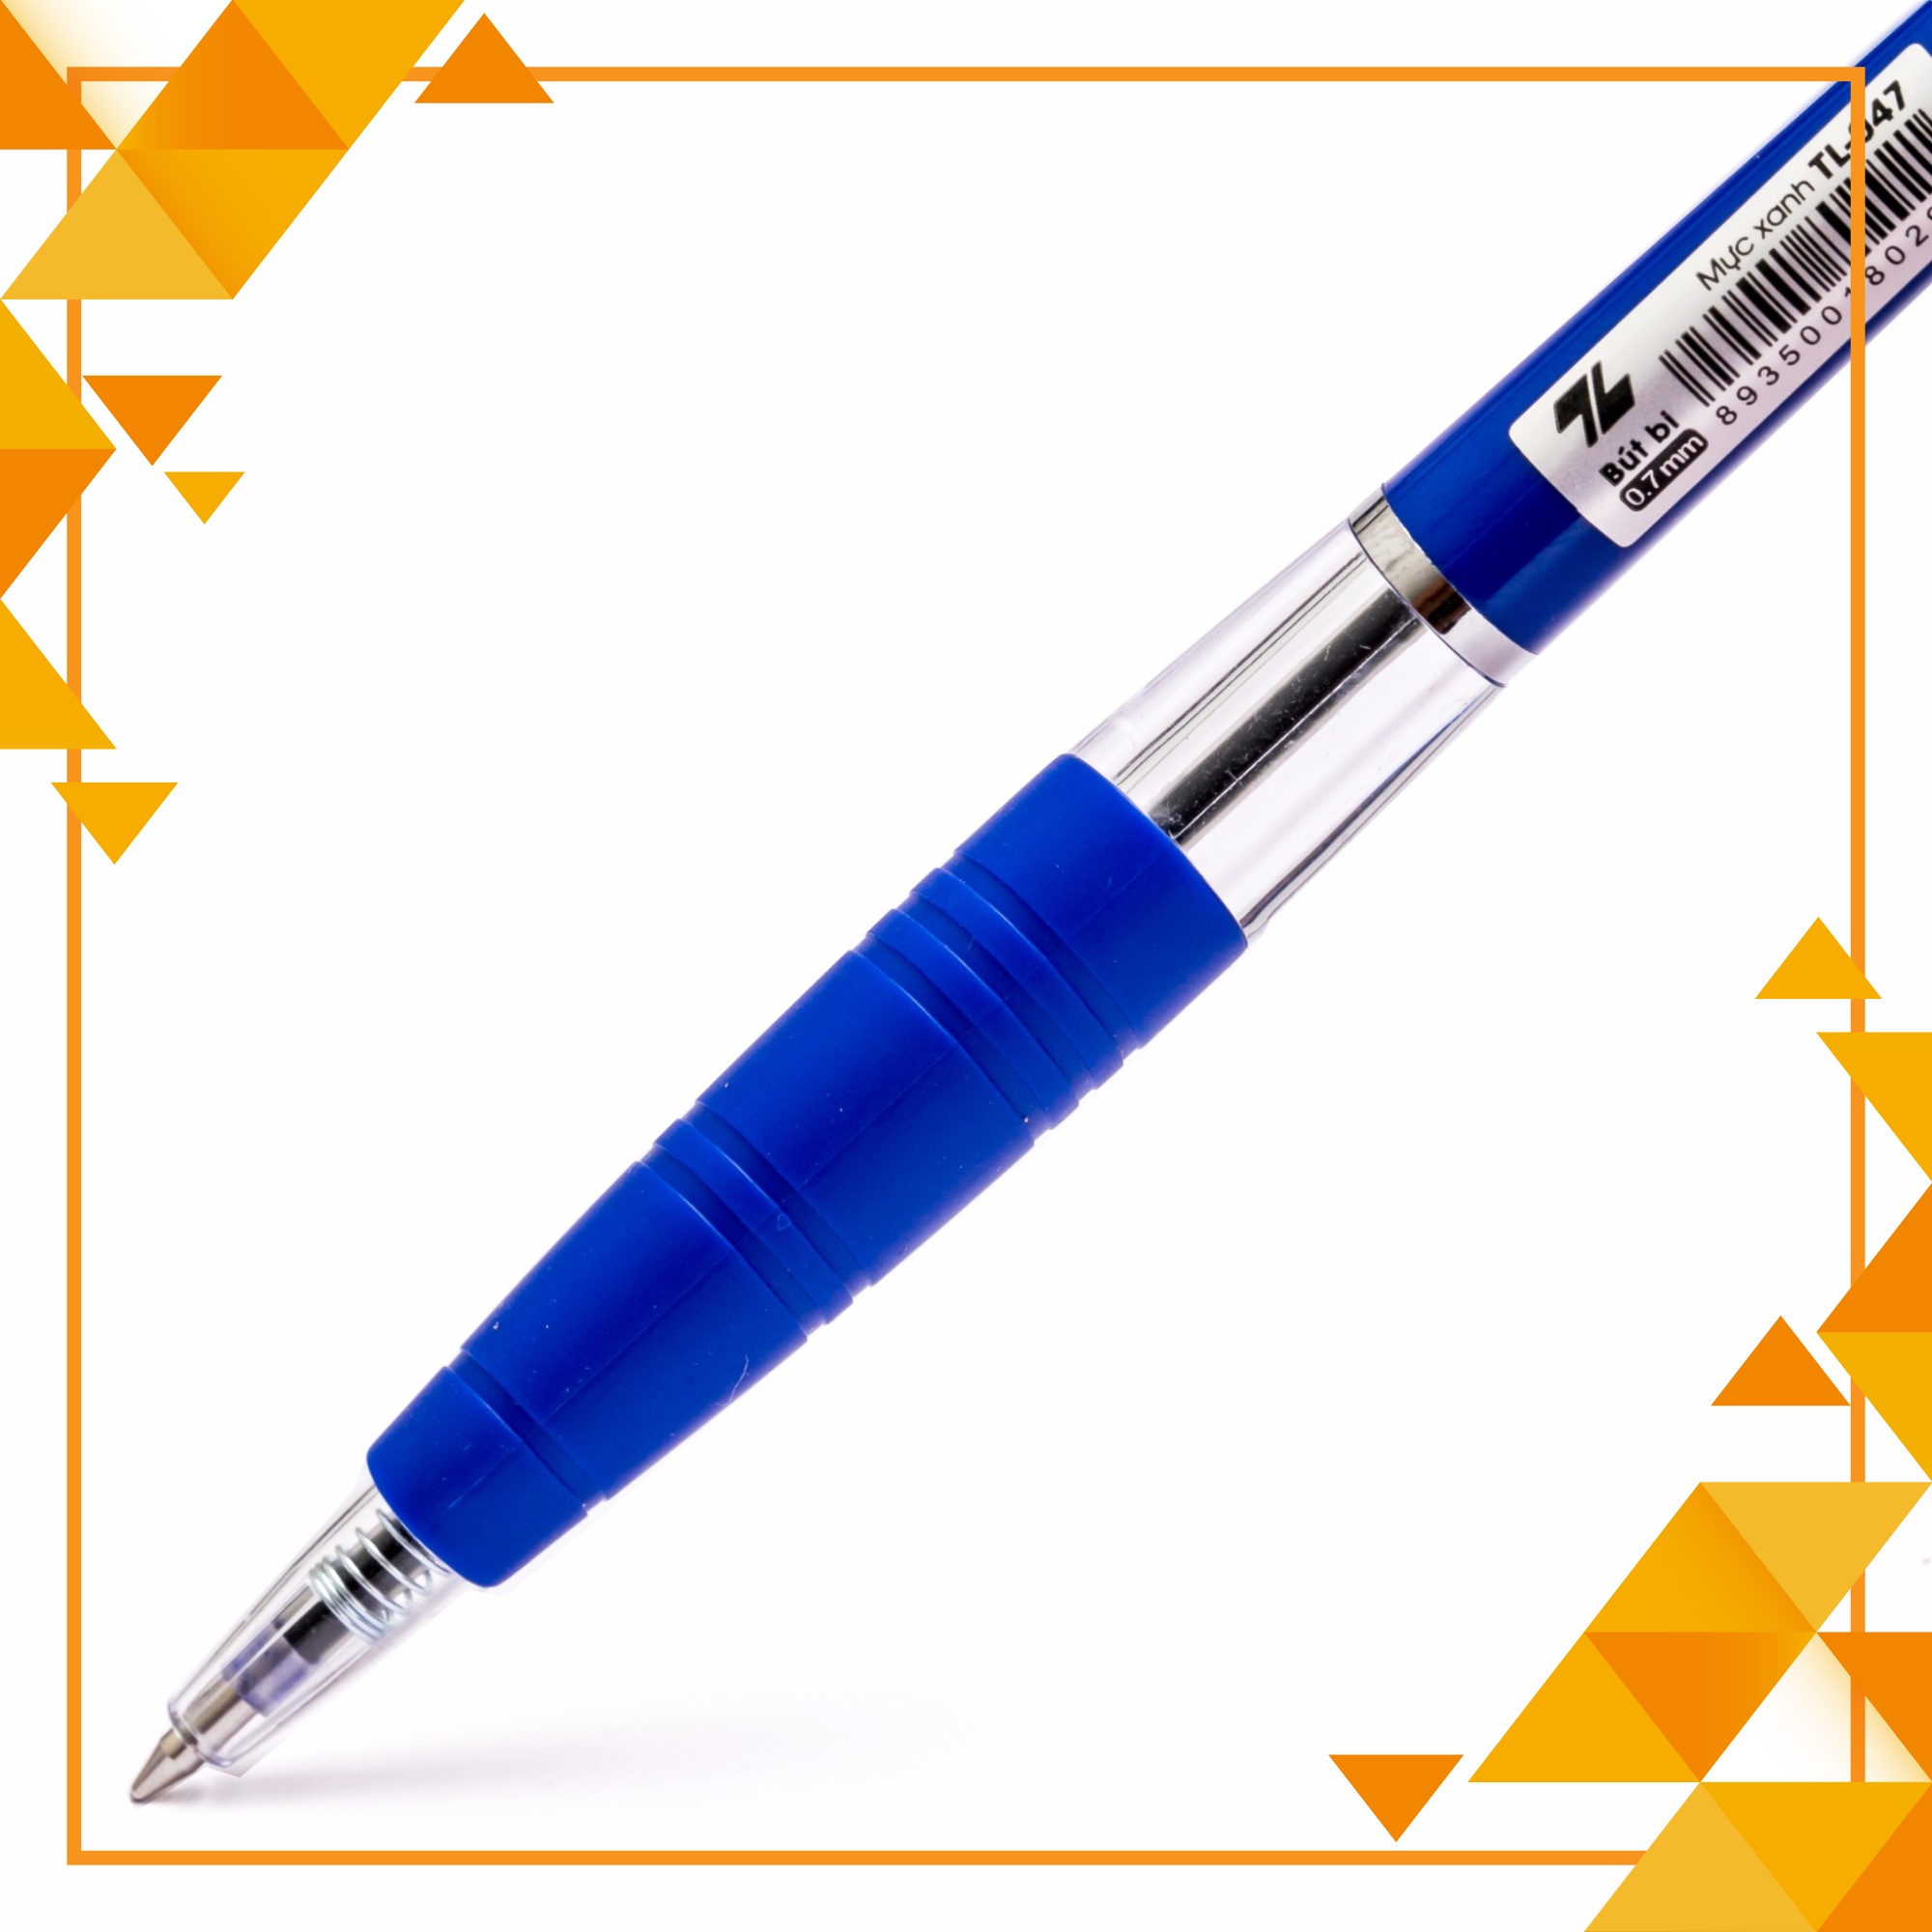 Bút bi TL 047 dạng bấm khế, có grip giúp êm tay và giảm trơn tuột khi viết thường phù hợp cho sinh viên, giới văn phòng (1 CÂY).